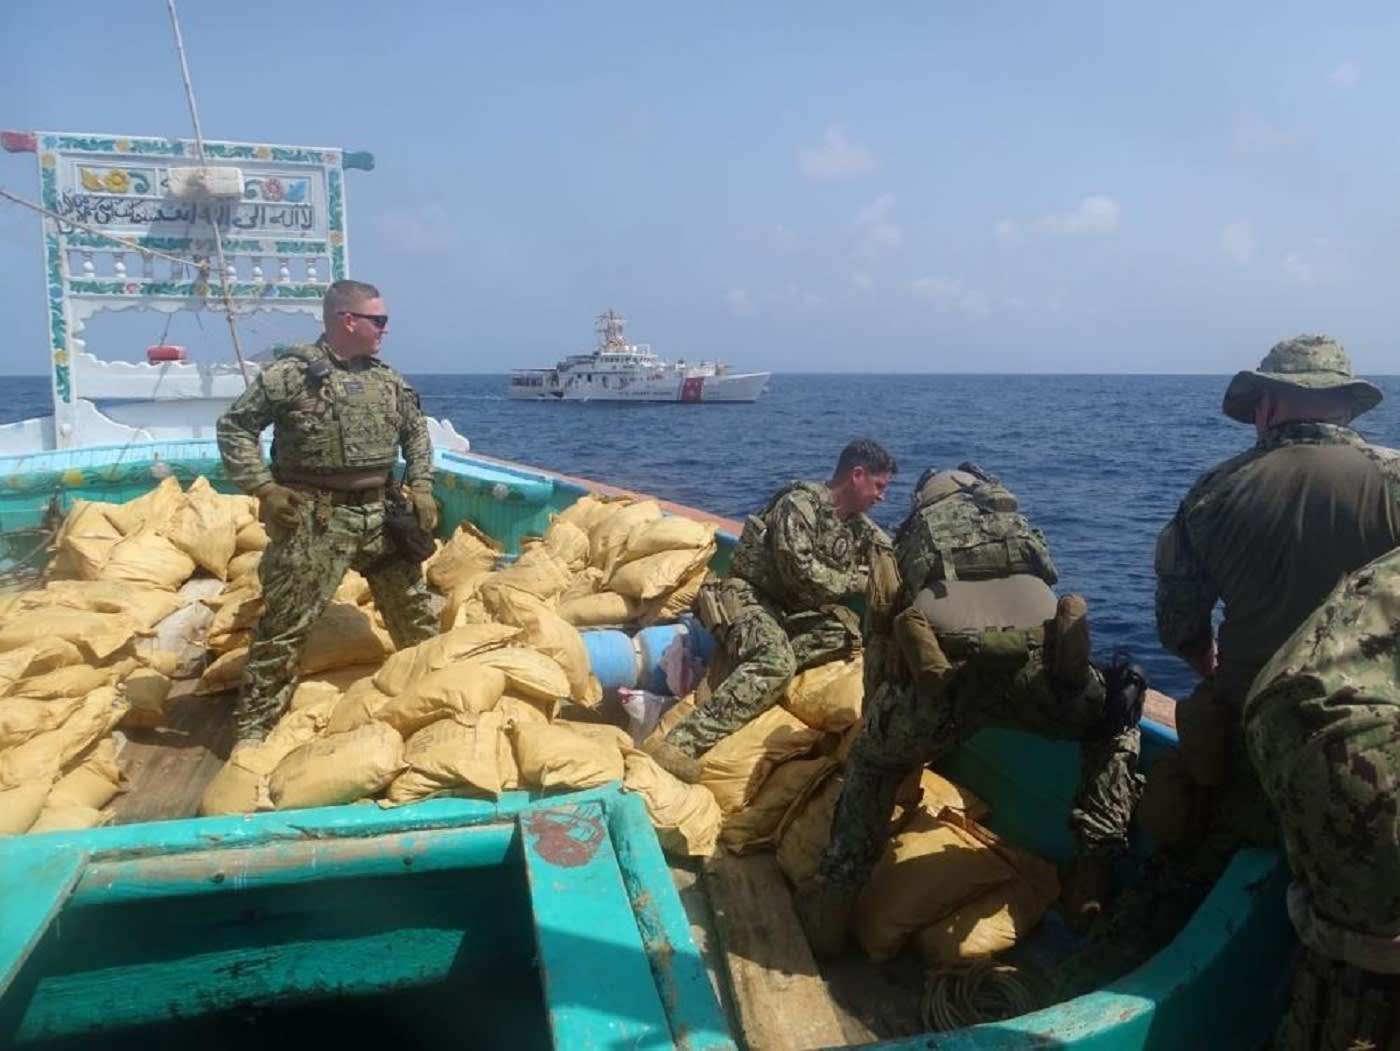 الأسطول الخامس الأمريكي: مصادرة ما يقدر بنحو 85 من الهيروين من سفينة في بحر عُمان